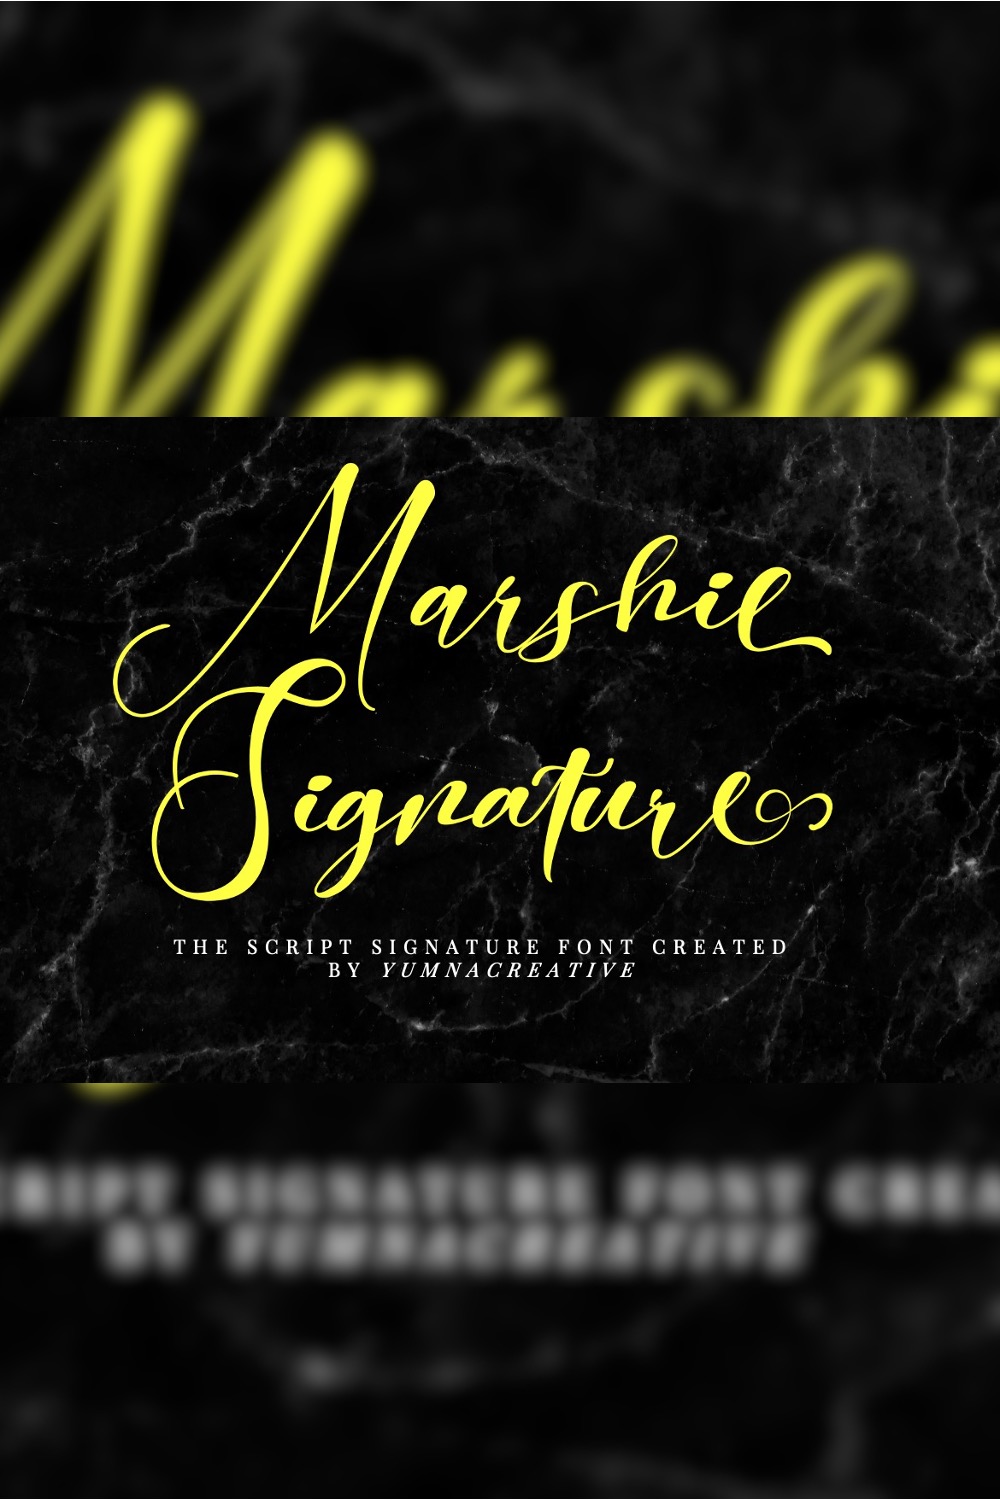 Marshie - Script Signature Font pinterest preview image.